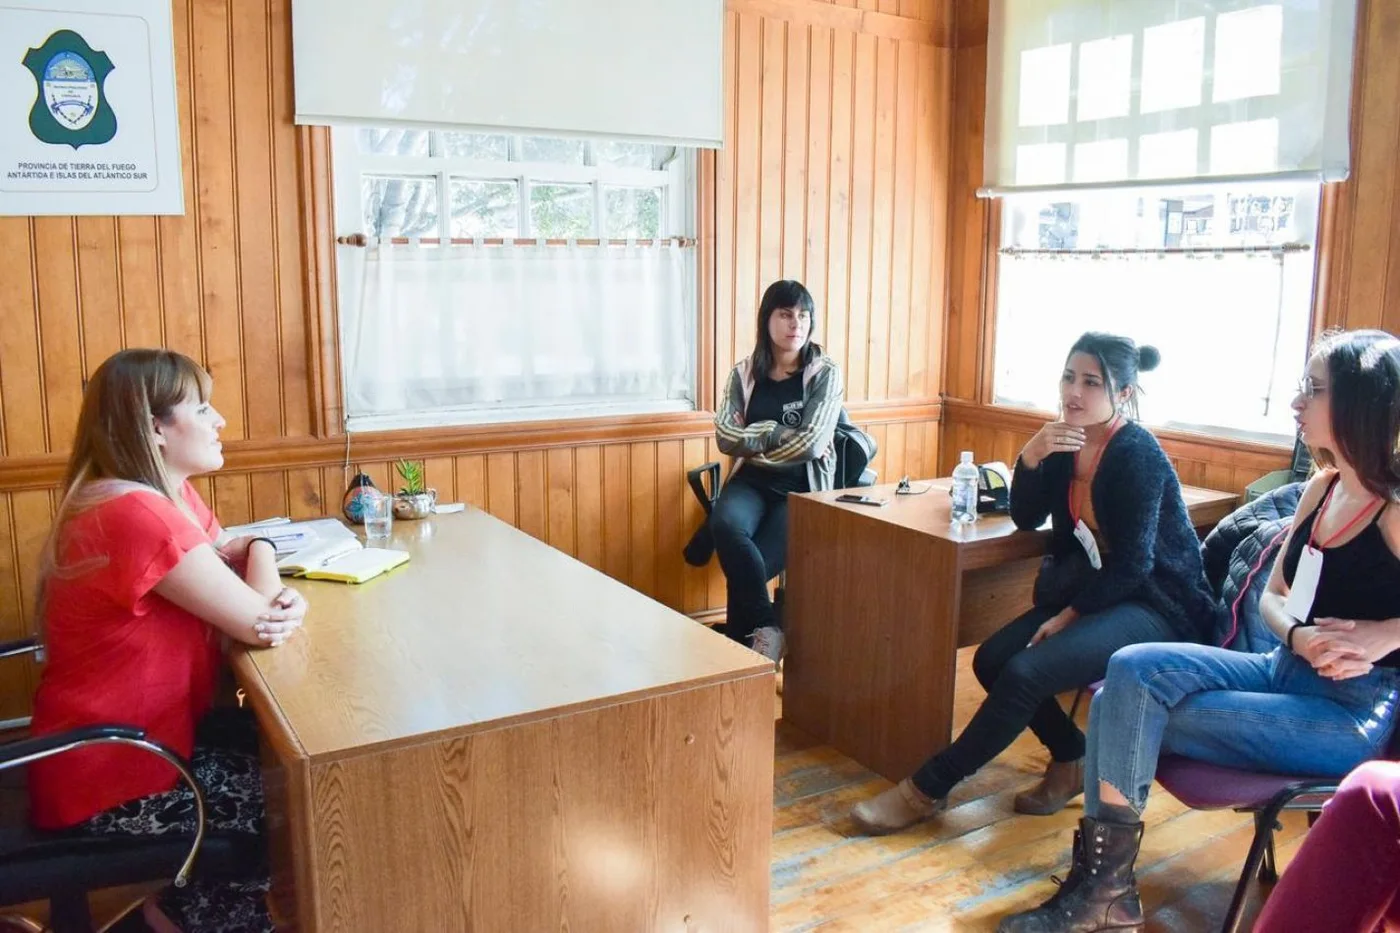 Se presentará una miniserie filmada en Ushuaia sobre problemáticas de género